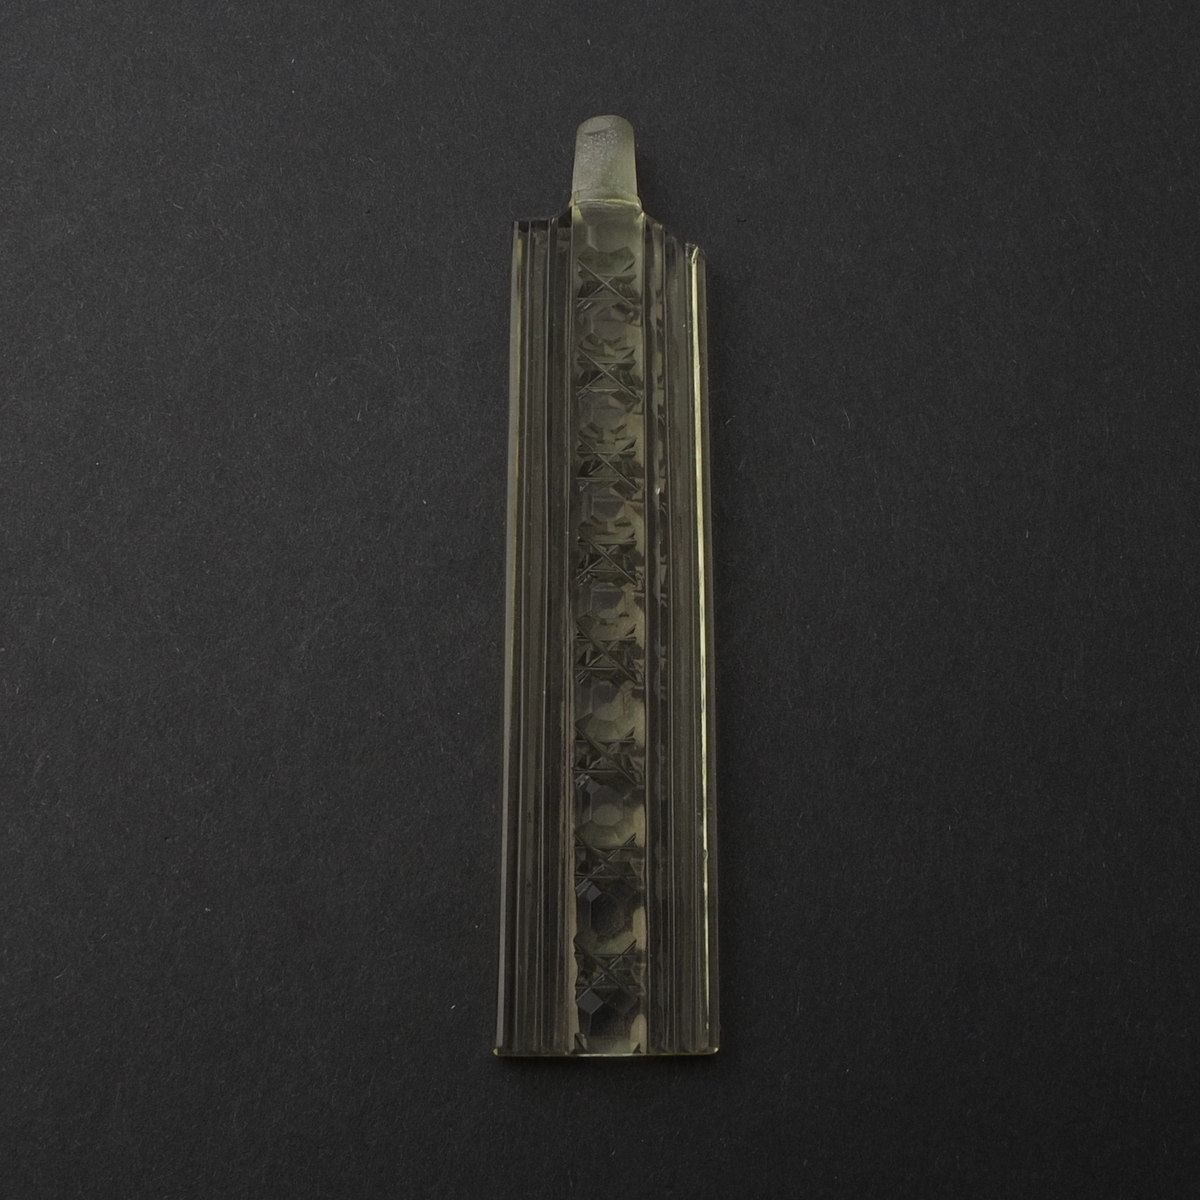 Original Art Deco Czech citrine glass rectangle perfume bottle stopper